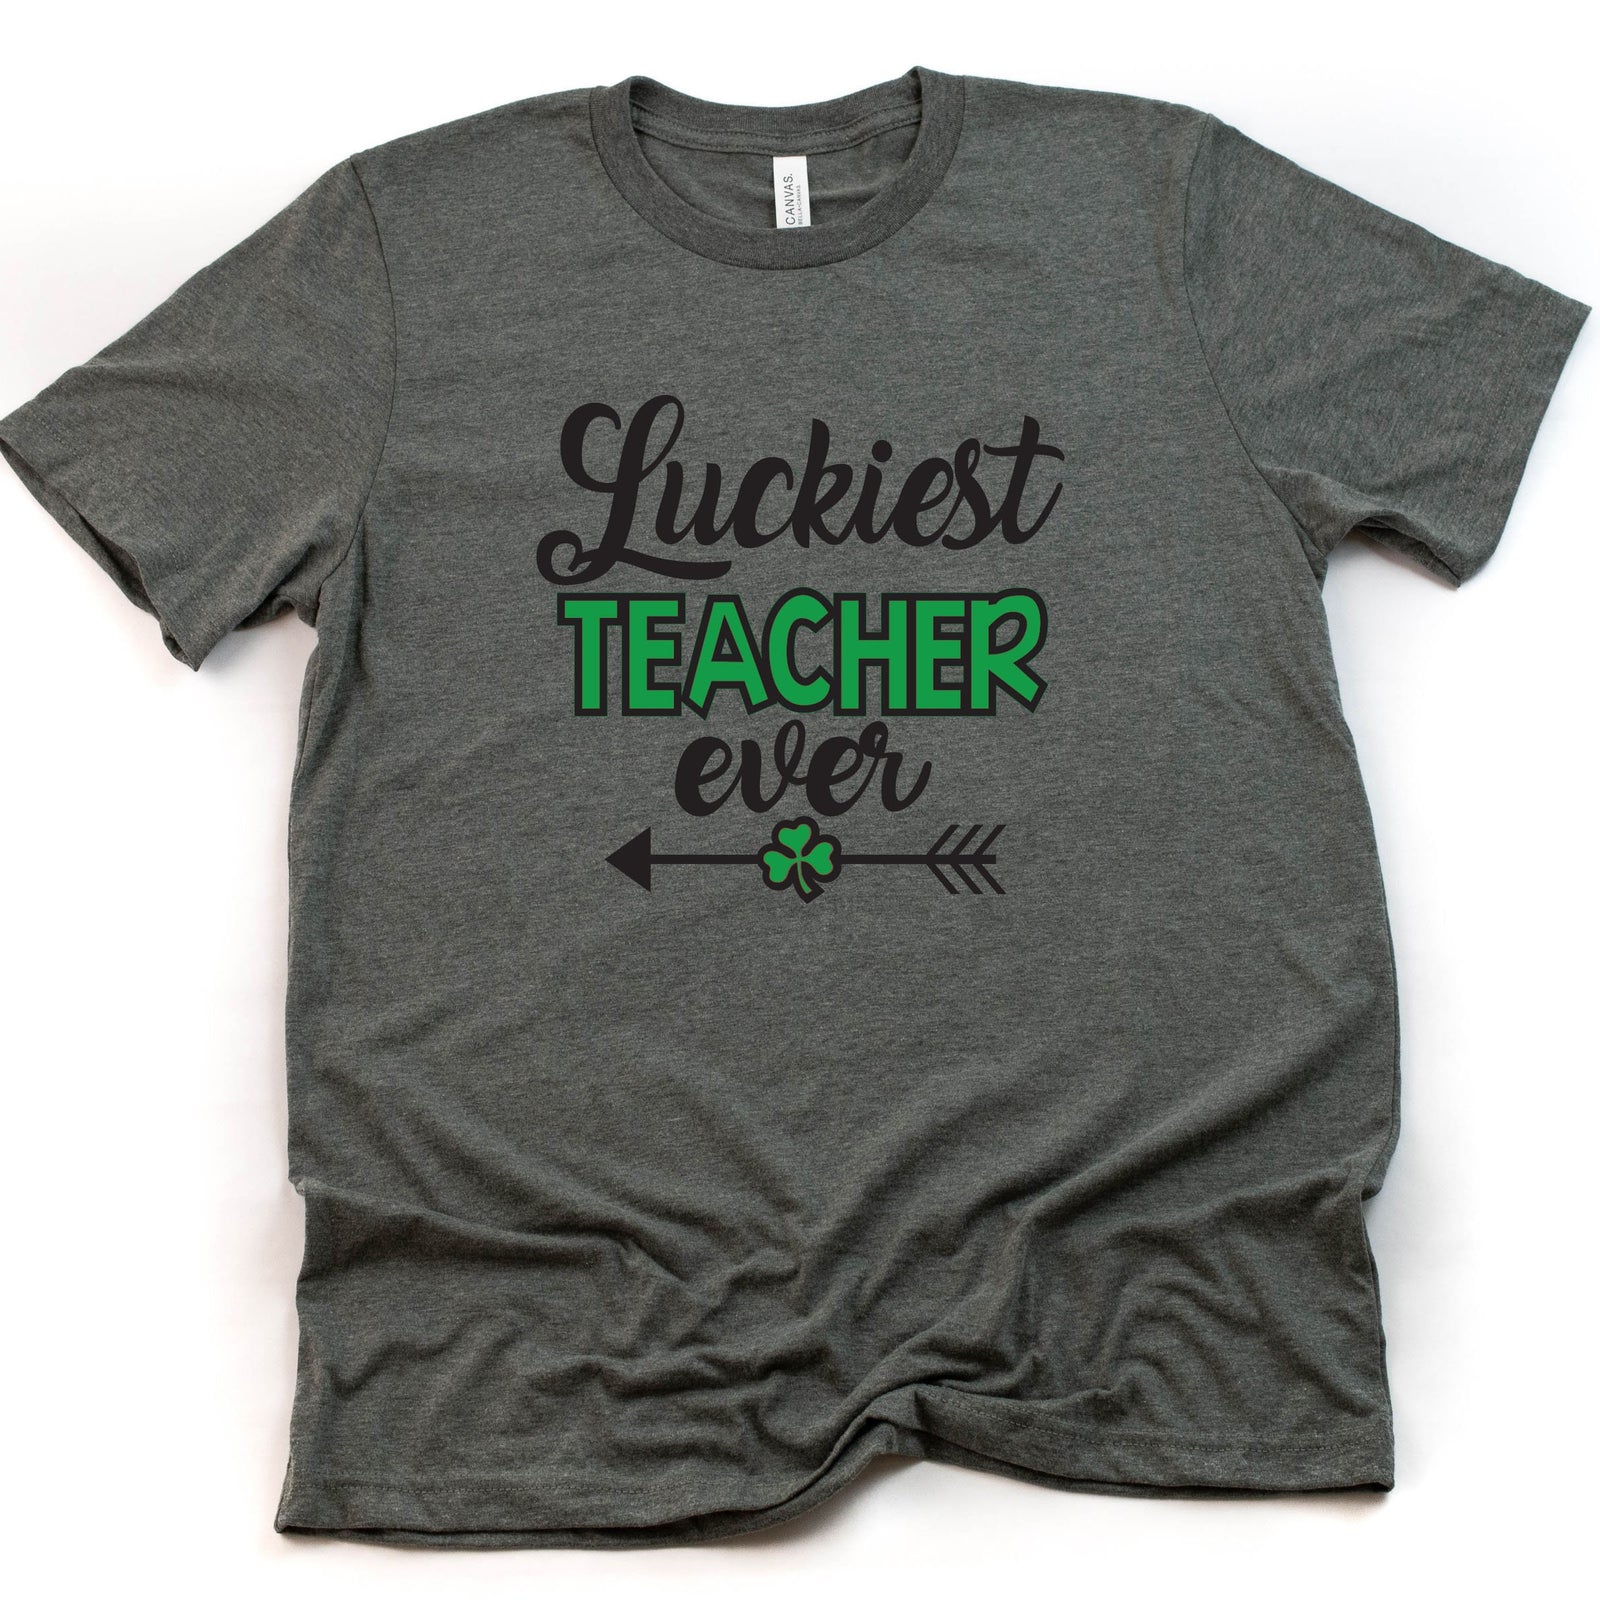 Luckiest Teacher Ever- St. Patrick's Day Shirt - Lucky Teacher Shirt - Teacher Shirt Gift